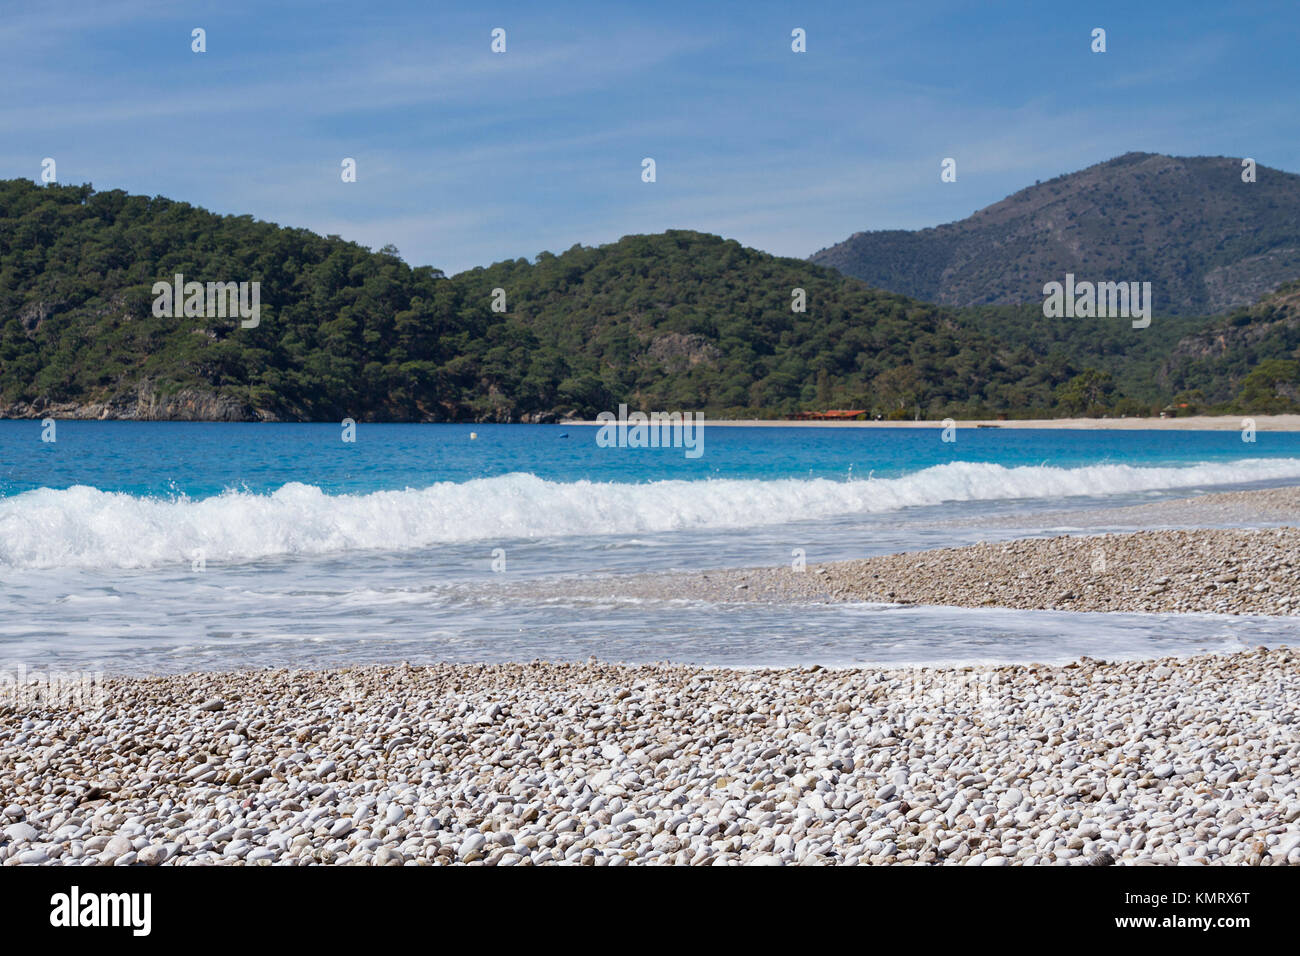 La côte turque avec de l'eau couleur turquoise de la Mer Egée. Banque D'Images